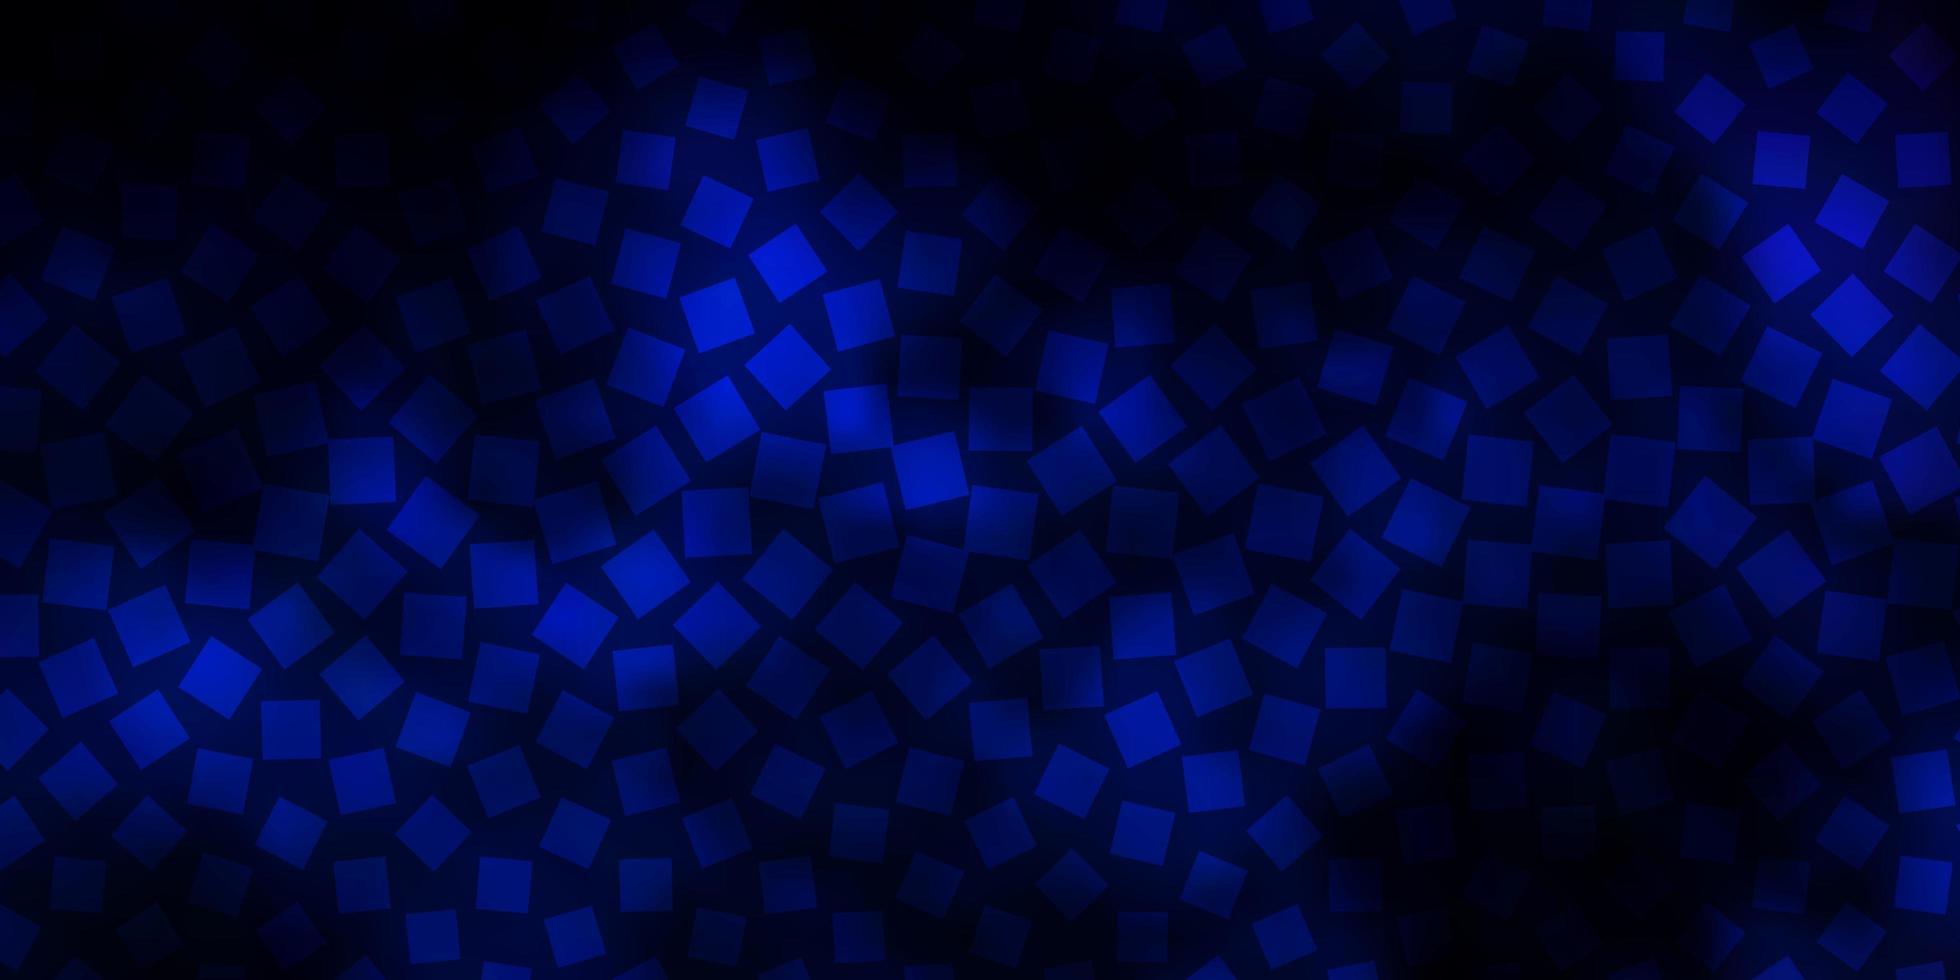 trama vettoriale blu scuro in stile rettangolare.